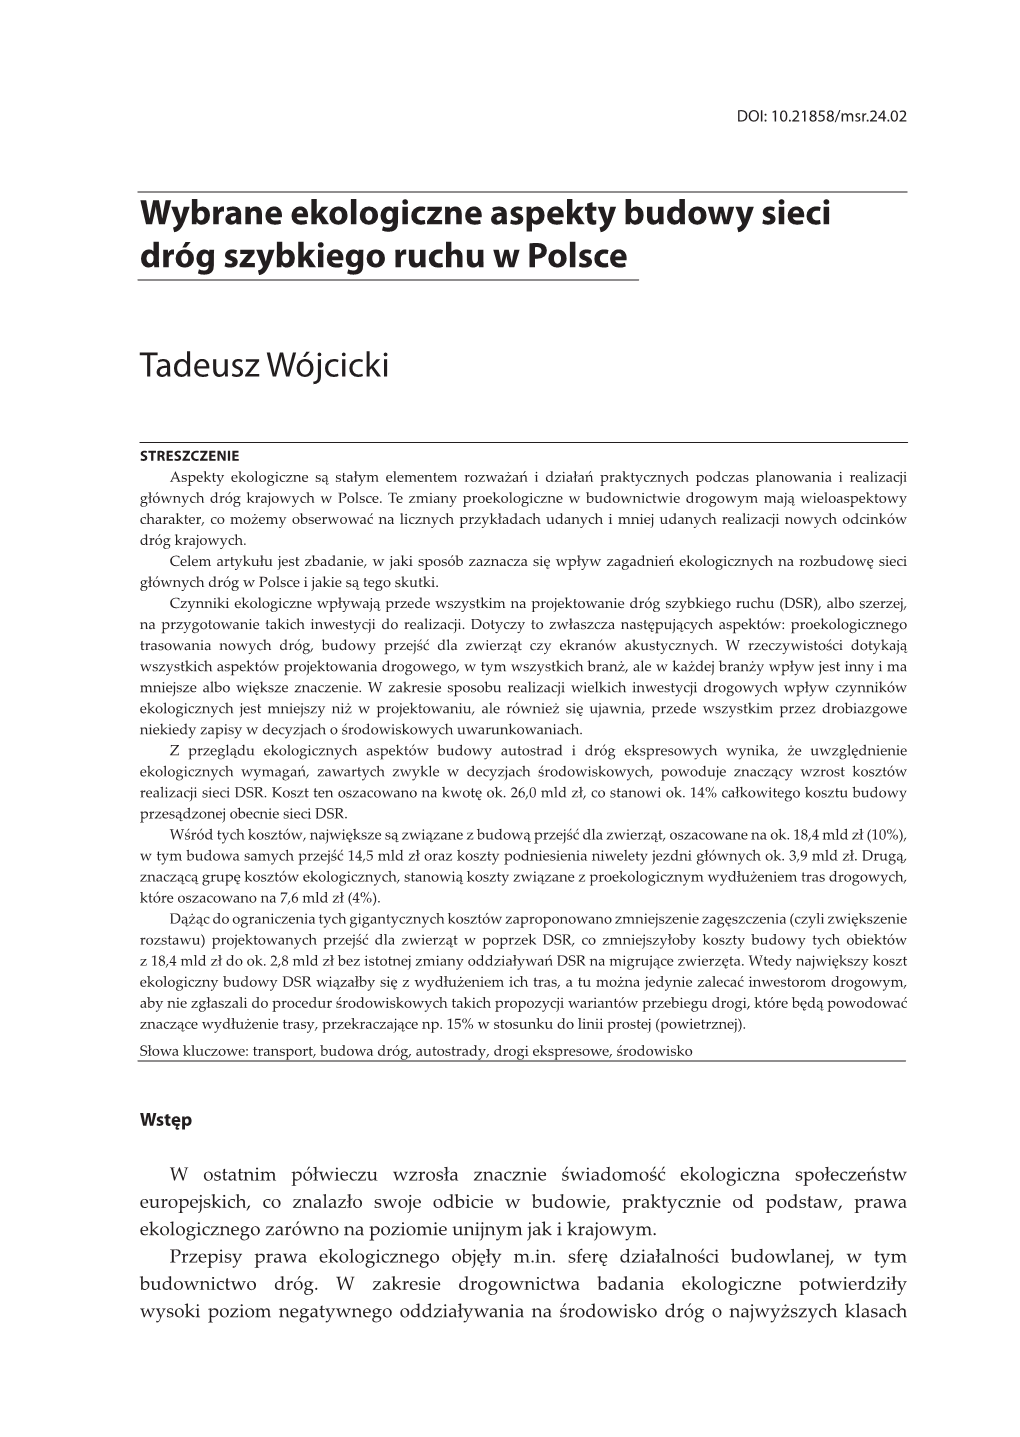 Wybrane Ekologiczne Aspekty Budowy Sieci Dróg Szybkiego Ruchu W Polsce